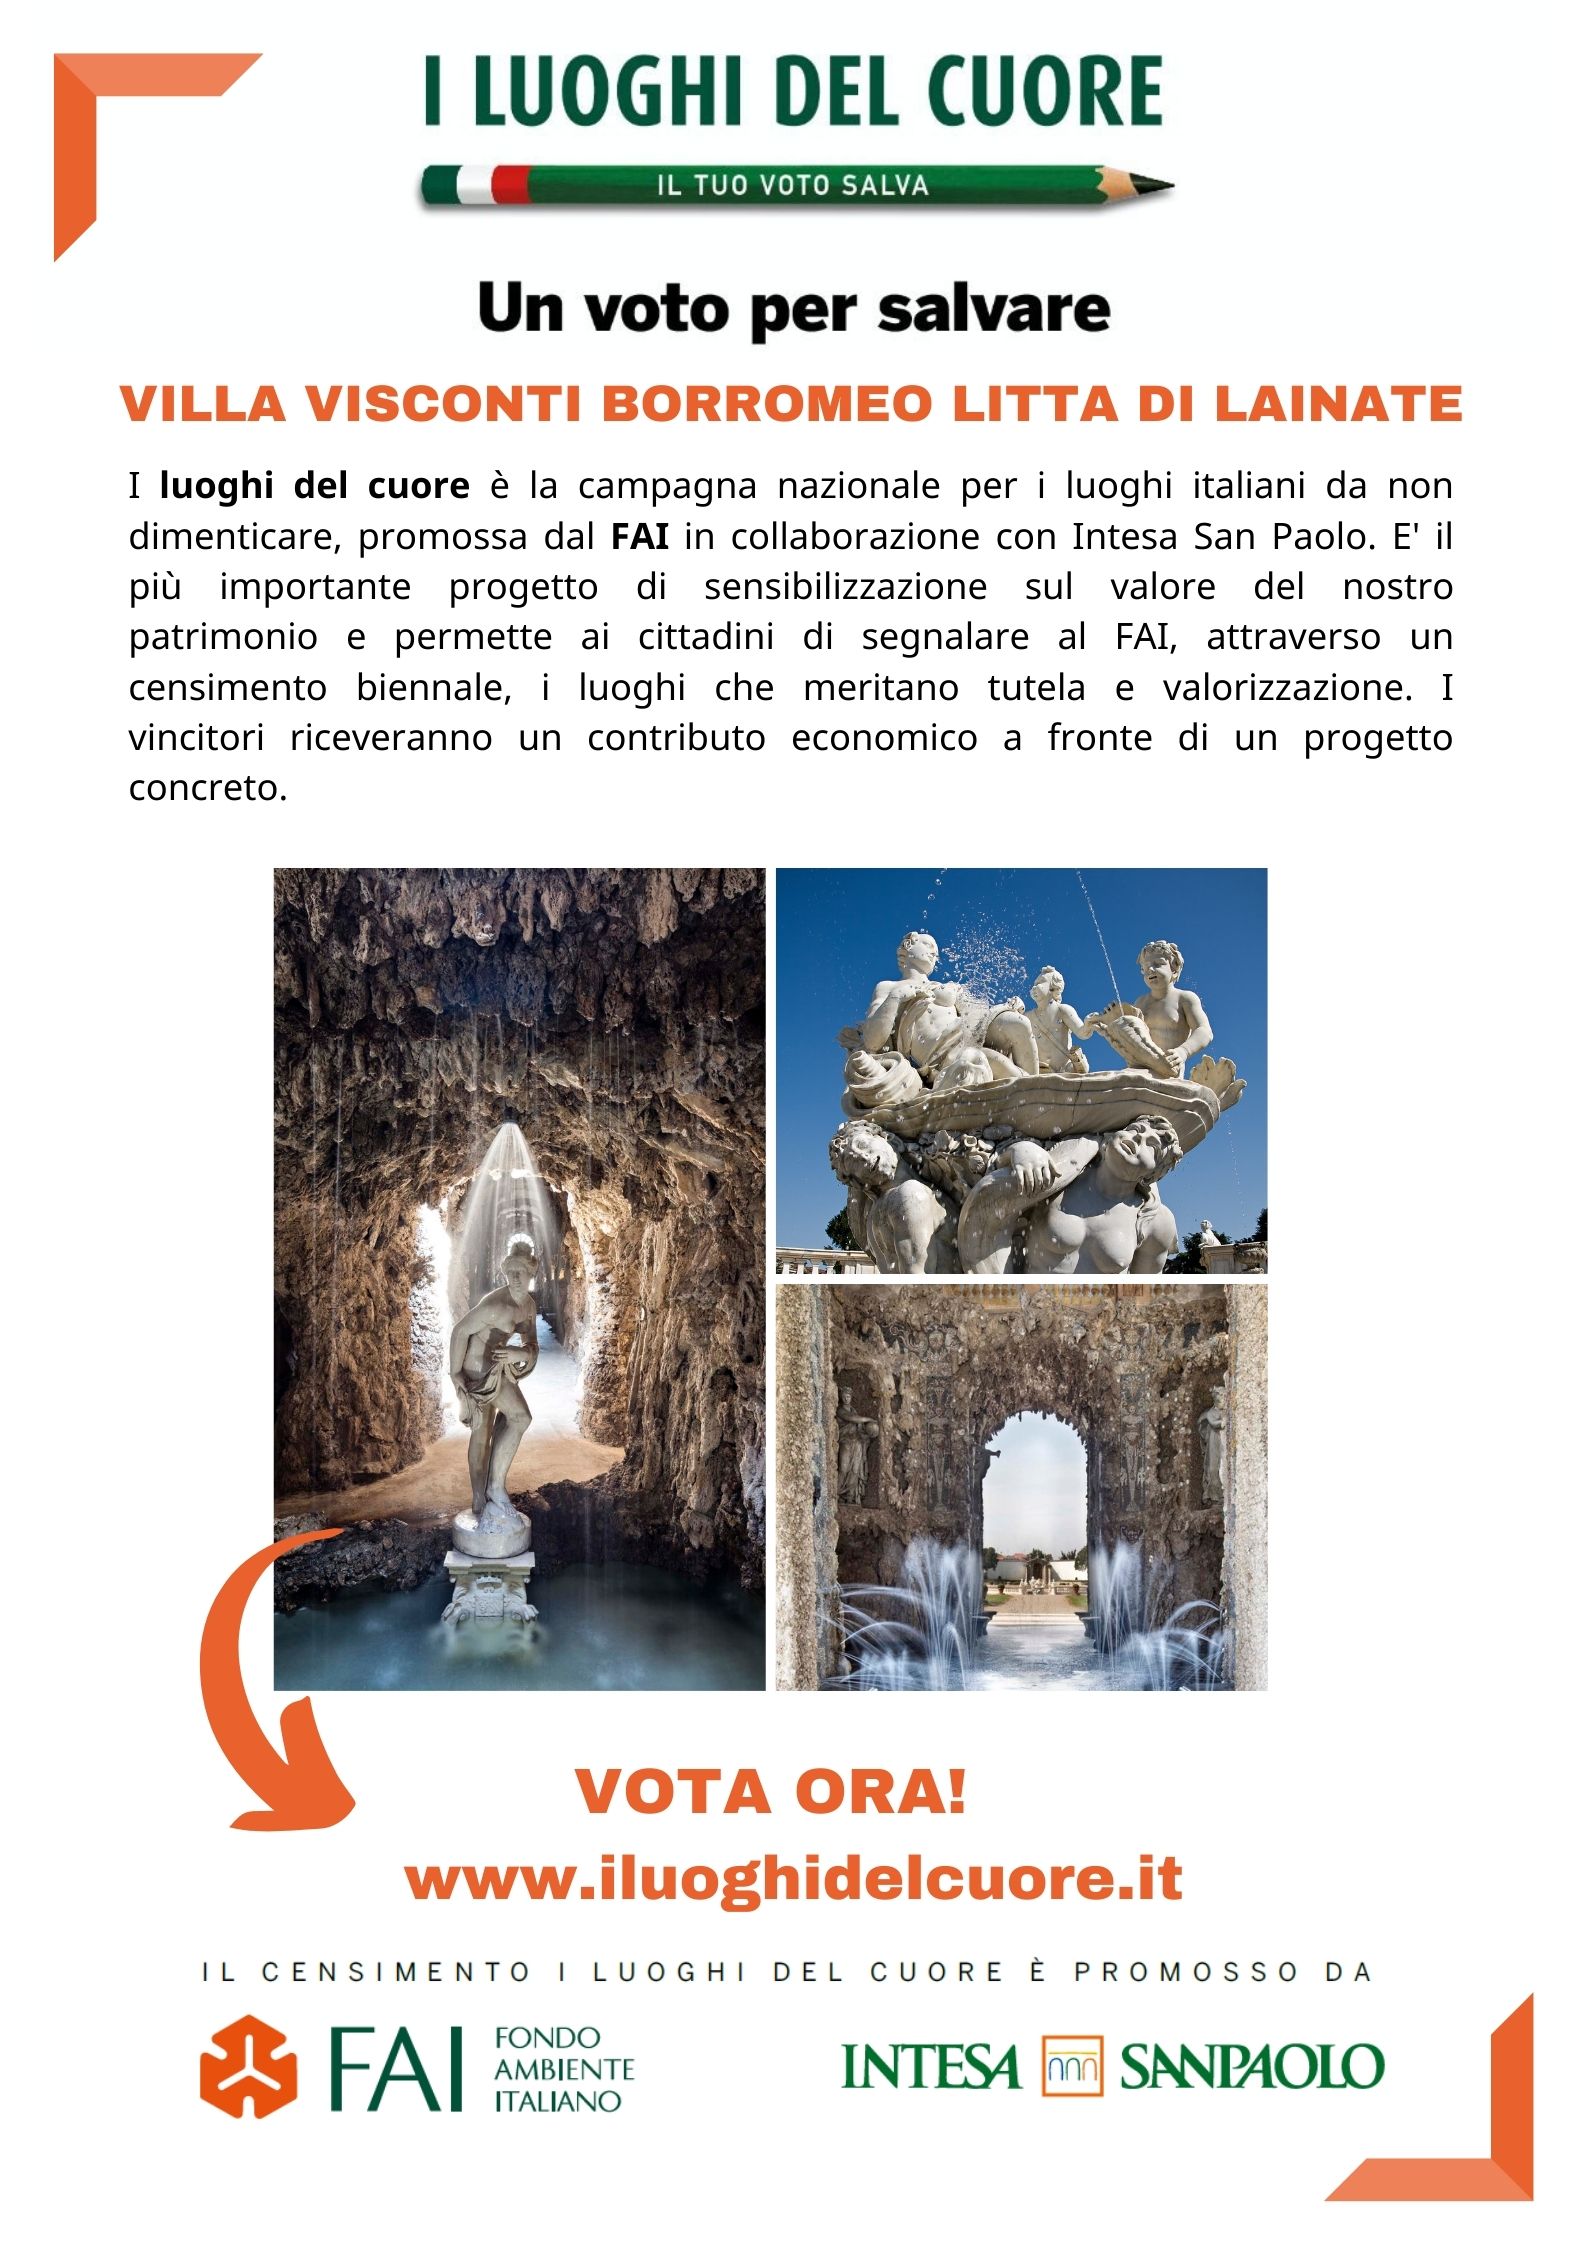 Vote for Villa Litta!